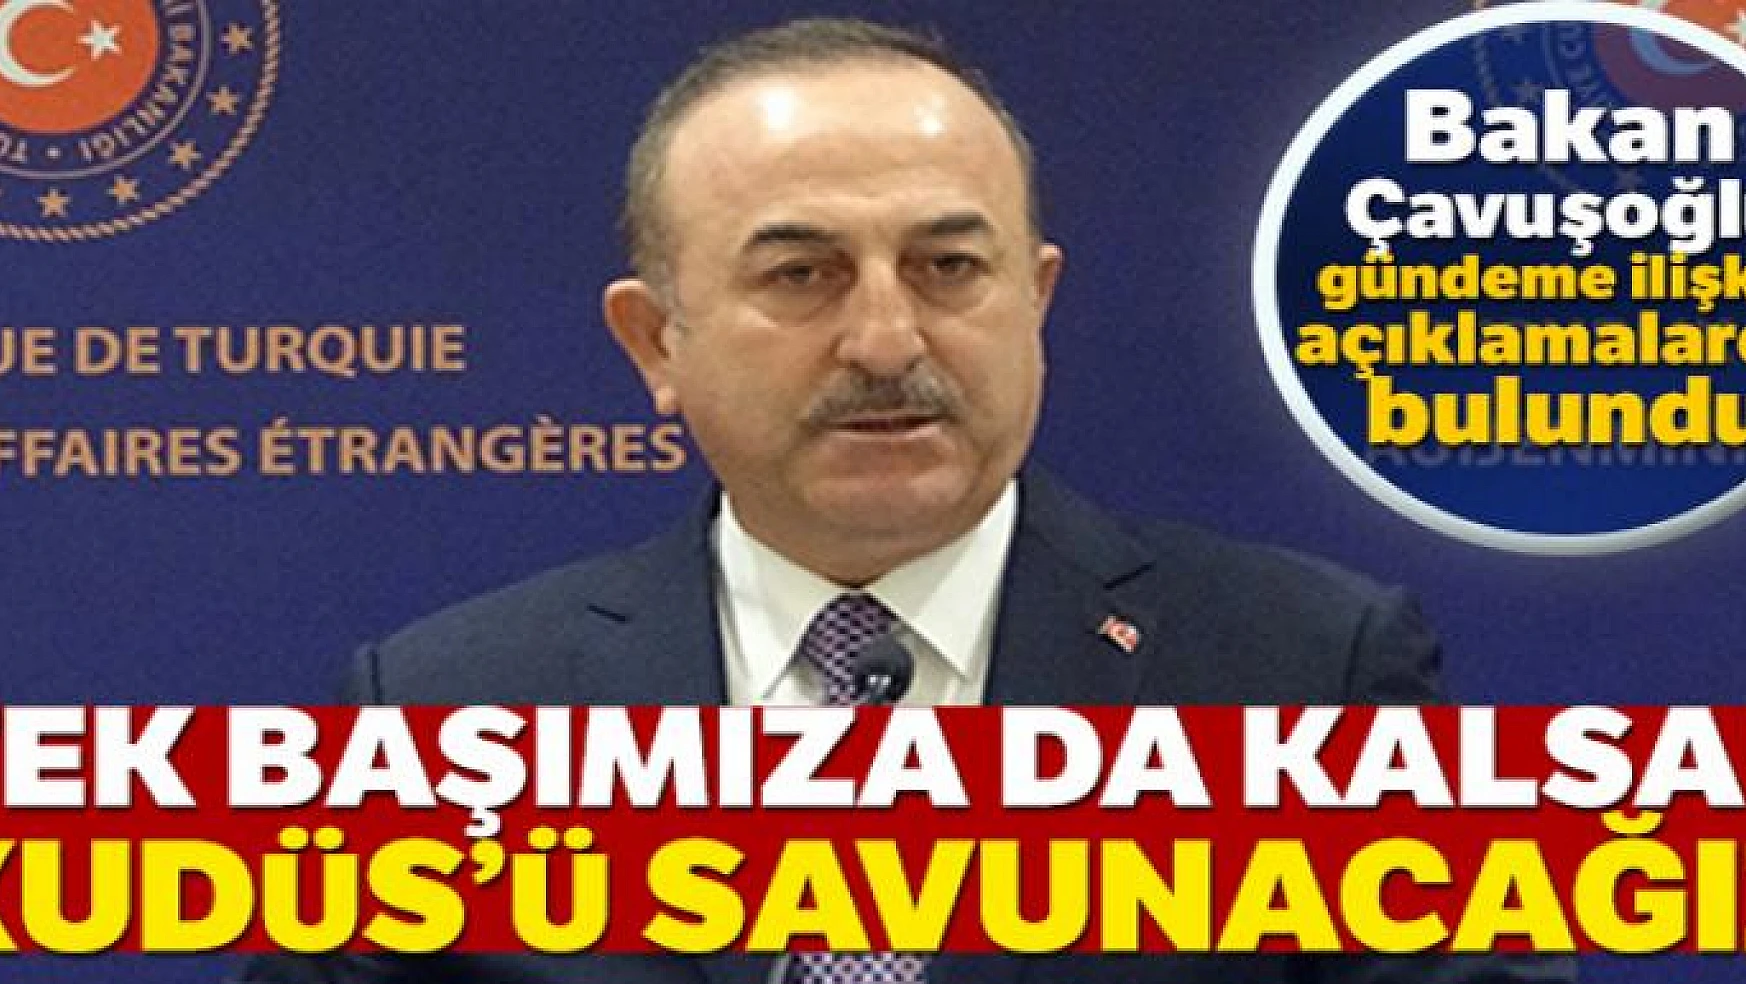 Dışişleri Bakanı Mevlüt Çavuşoğlu: Tek başımıza da kalsak Kudüs'ü savunacağız